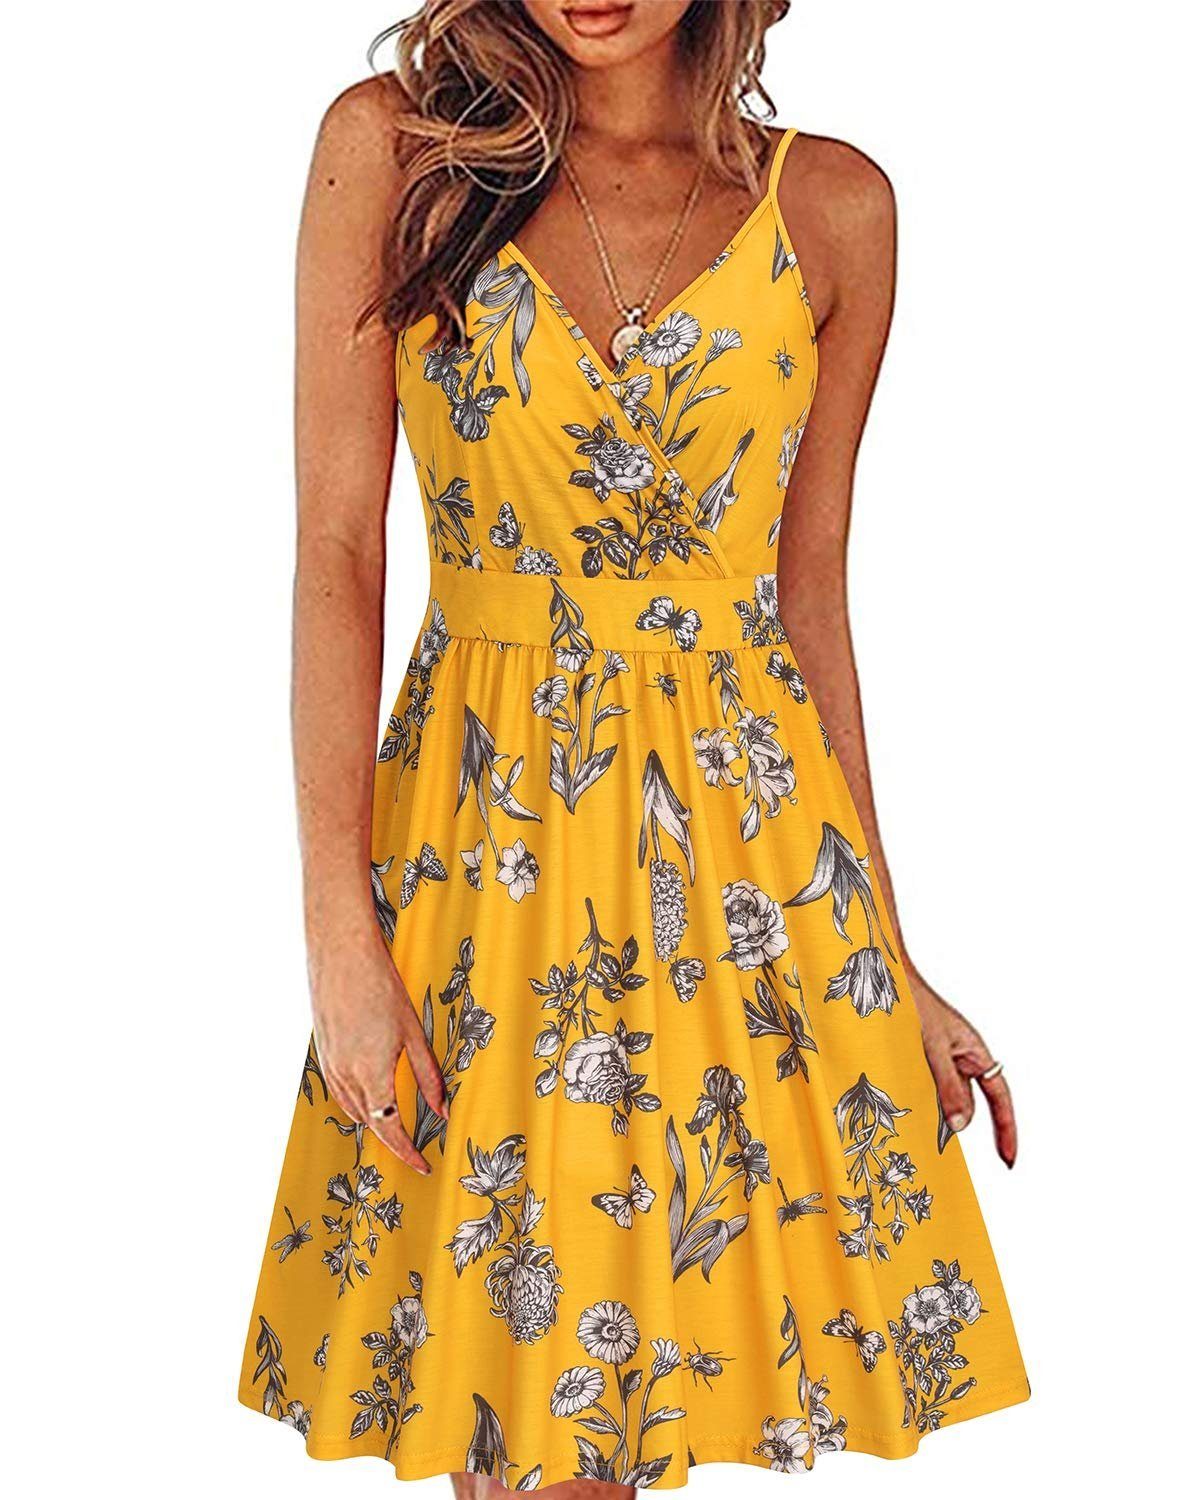 Damen OTGFNN21S234 Kleid Tank Ärmelloses Strandkleid Sommerkleid V-Ausschnitt G4Free Midilänge Kleider Blumen Sommer Vintage mit Gelb-NN234C Taschen